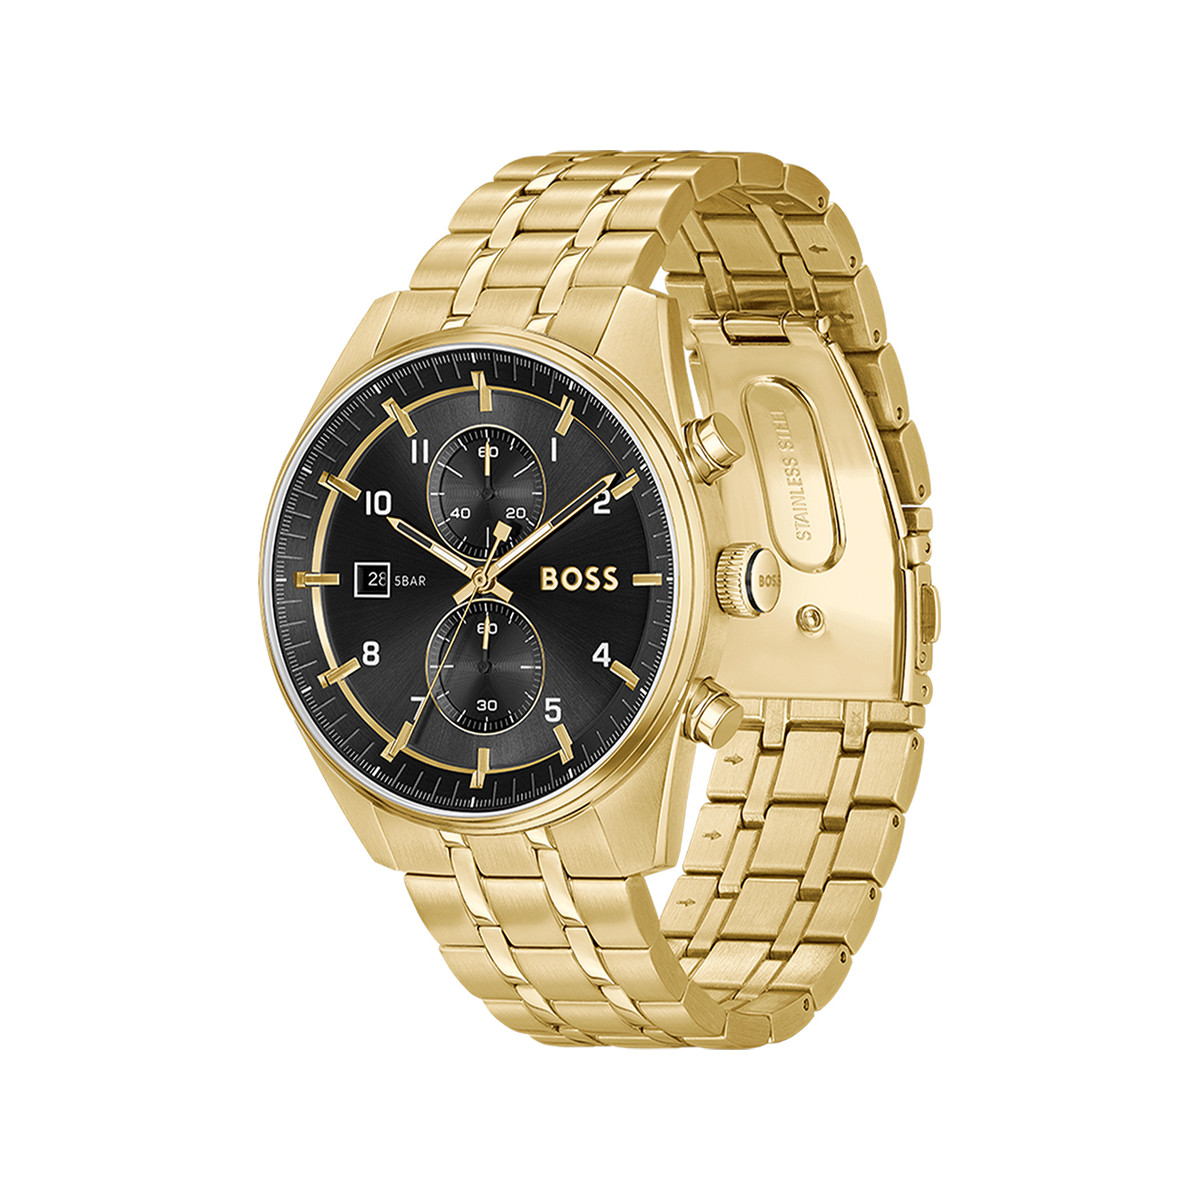 Montre BOSS sport lux homme chronographe bracelet acier inoxydable doré jaune - vue 2